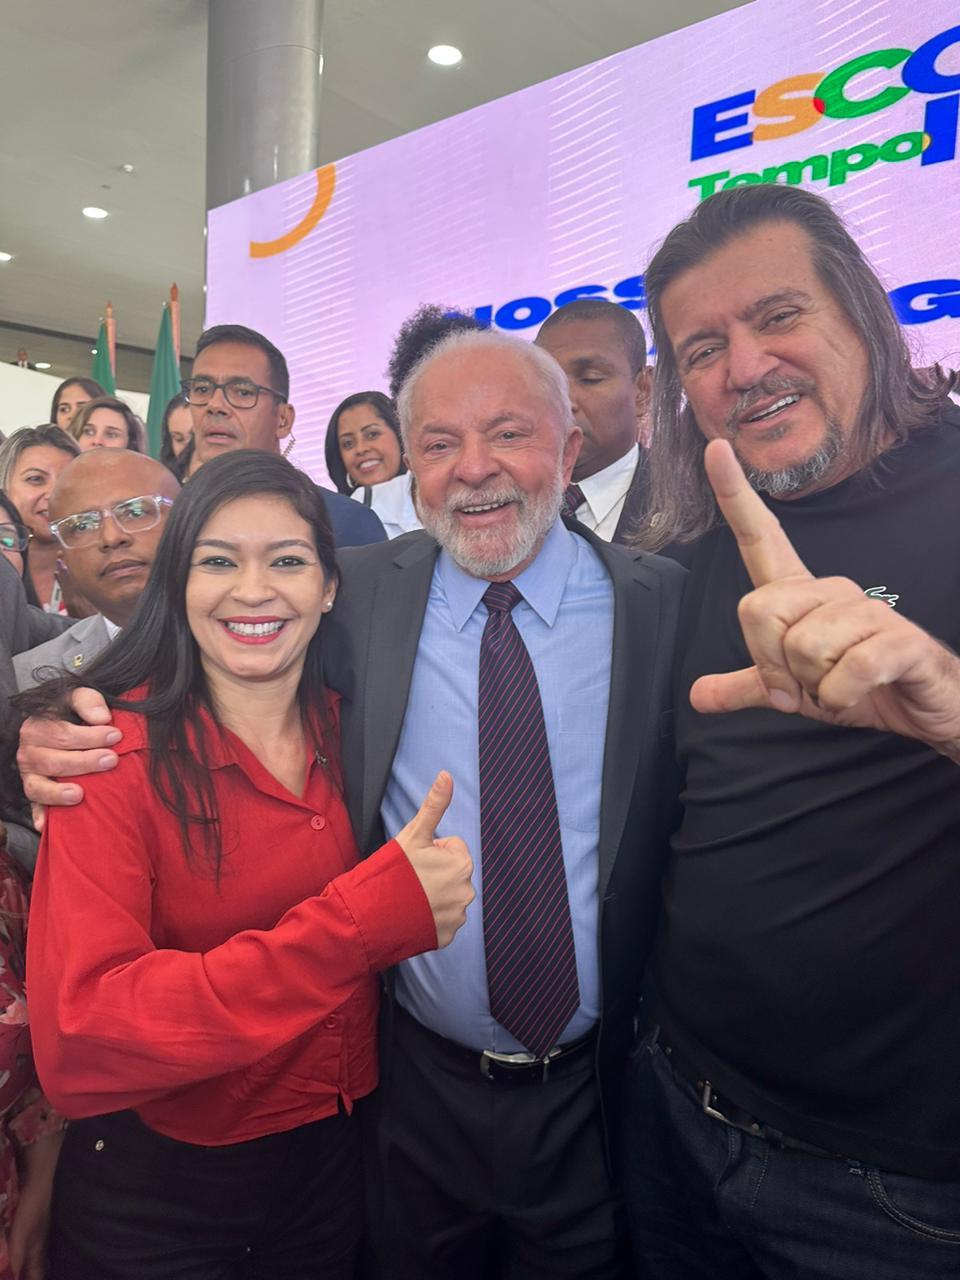 Ufenes e curso de medicina em São Mateus no ES: Presidente Lula responde solicitação feita pelo prefeito Daniel Santana